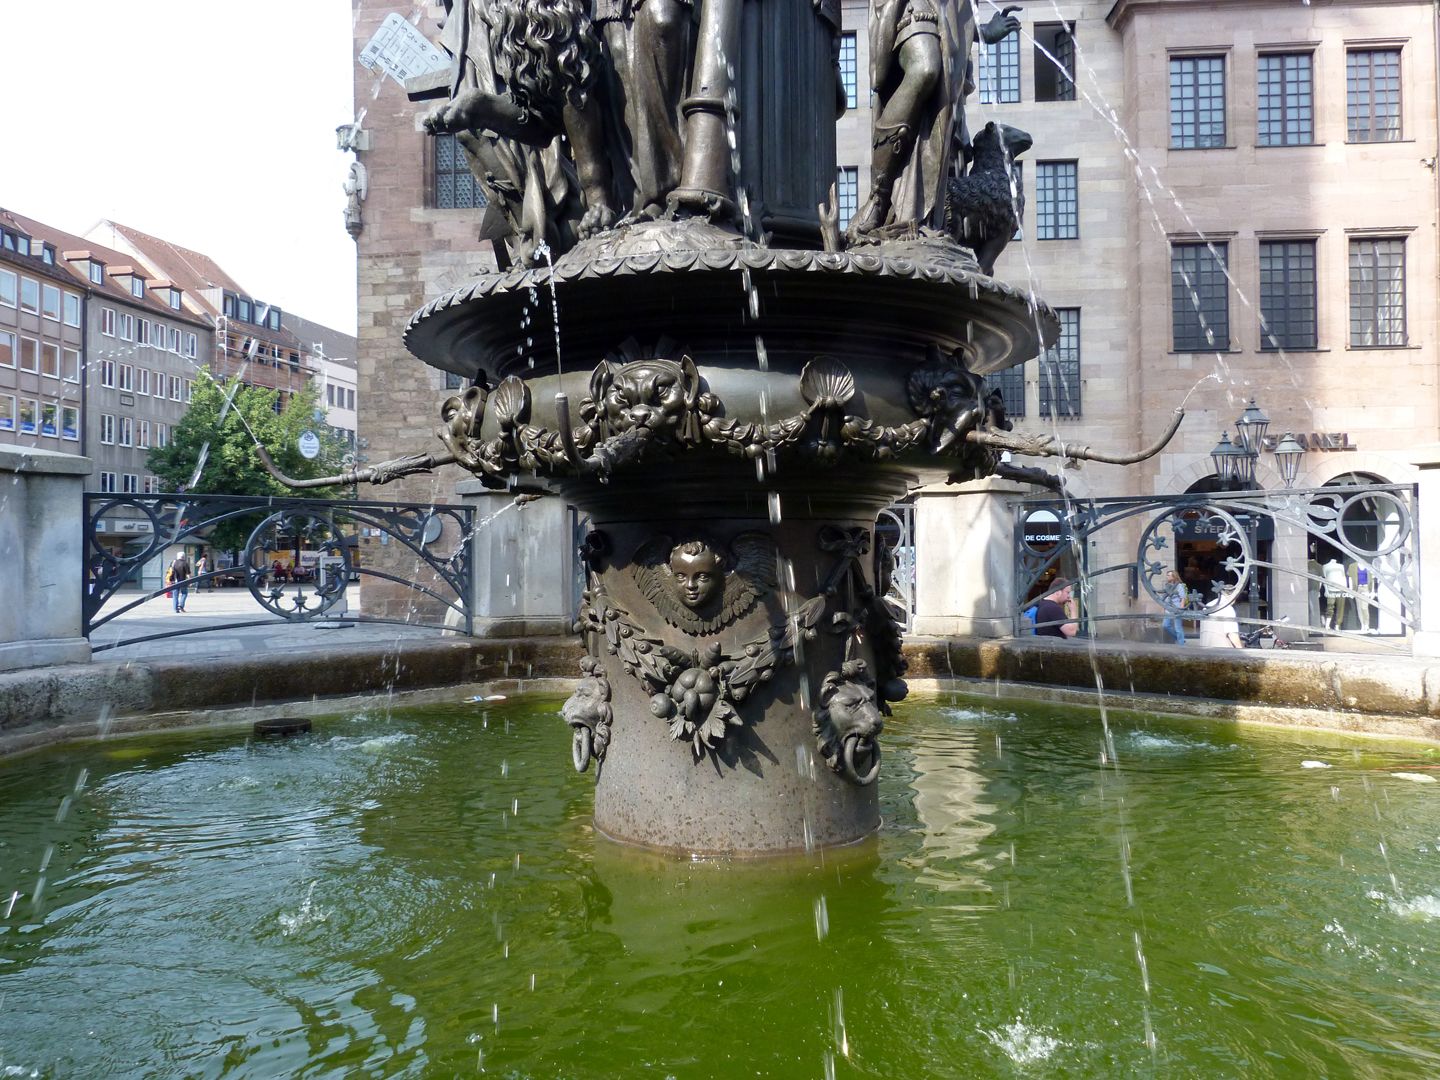 Tugendbrunnen Der Schaft des Pfeilers geschmückt mit Girlanden, Engelsköpfen, Muscheln und Masken.